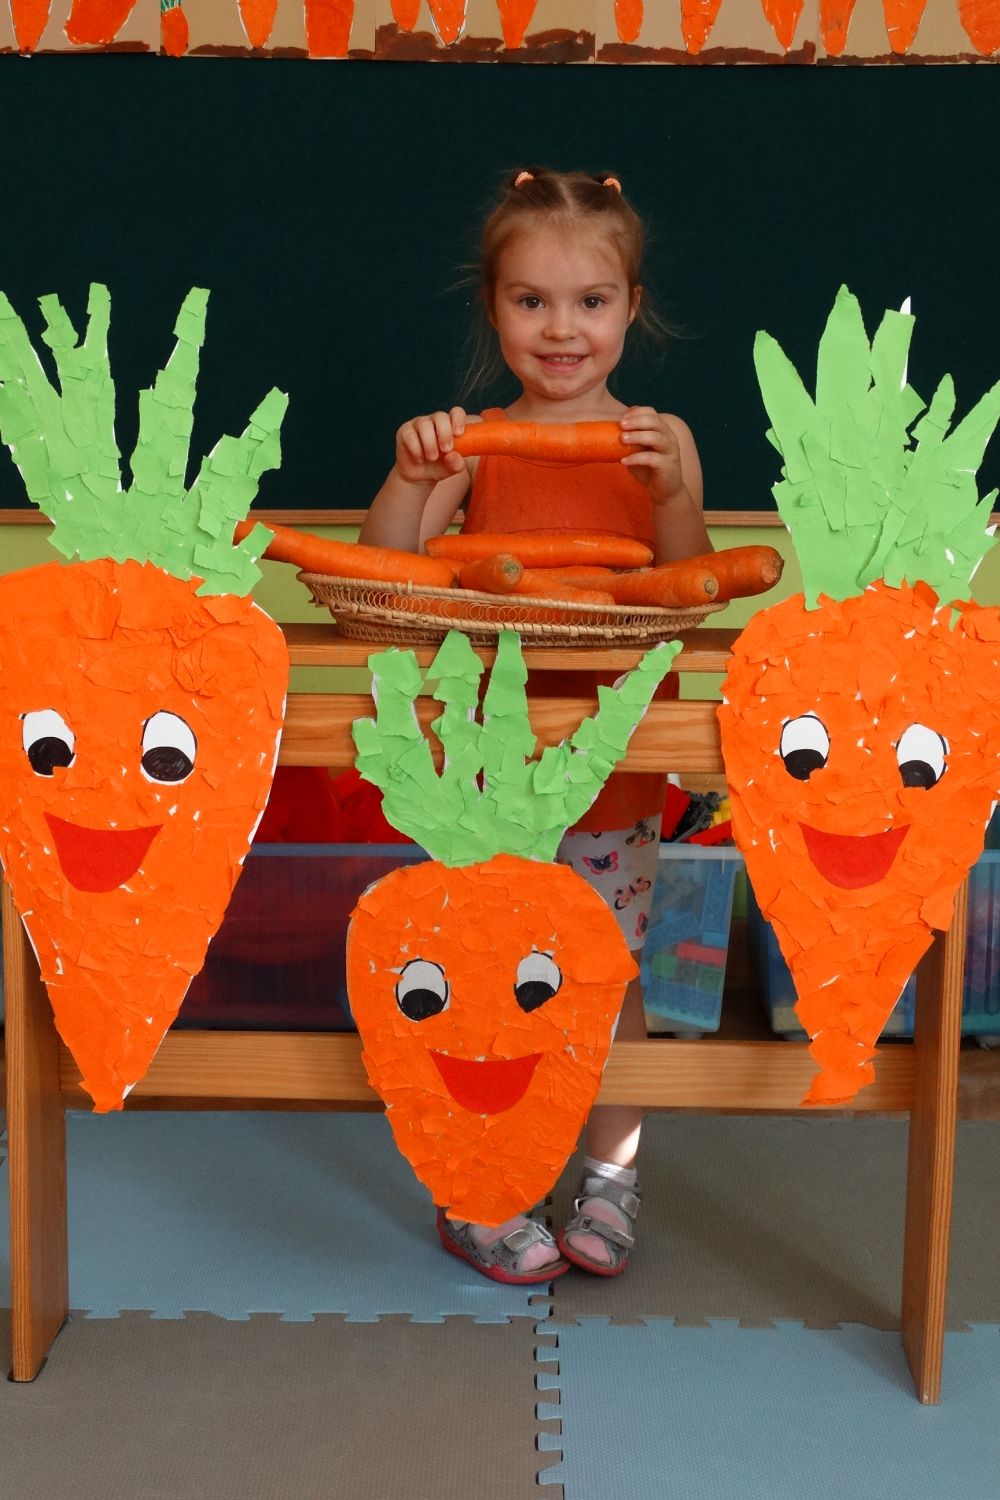 Dziewczynka ubrana na pomarańczowo trzyma w ręce marchewkę, z przed nią stoi półka z marchewkami z papieru